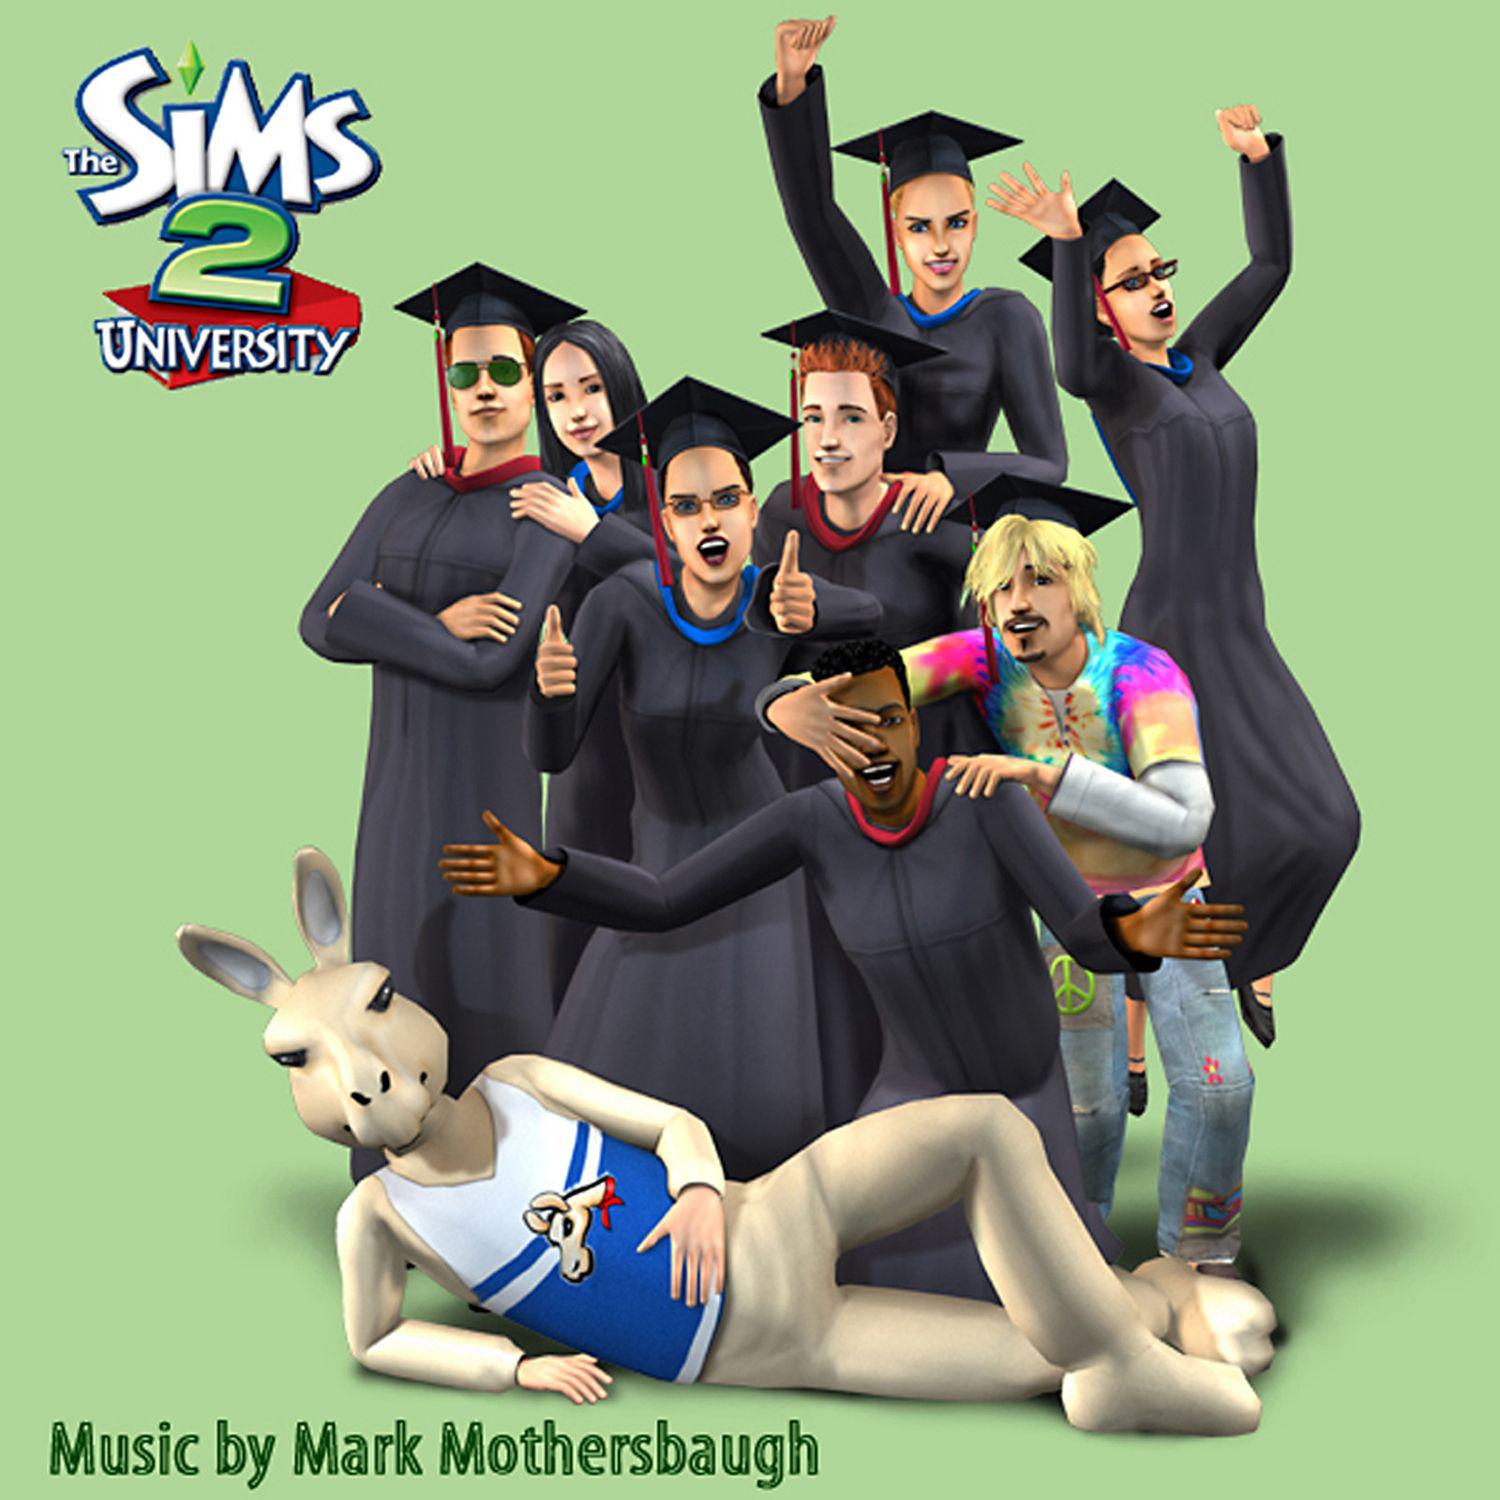 The Sims Theme